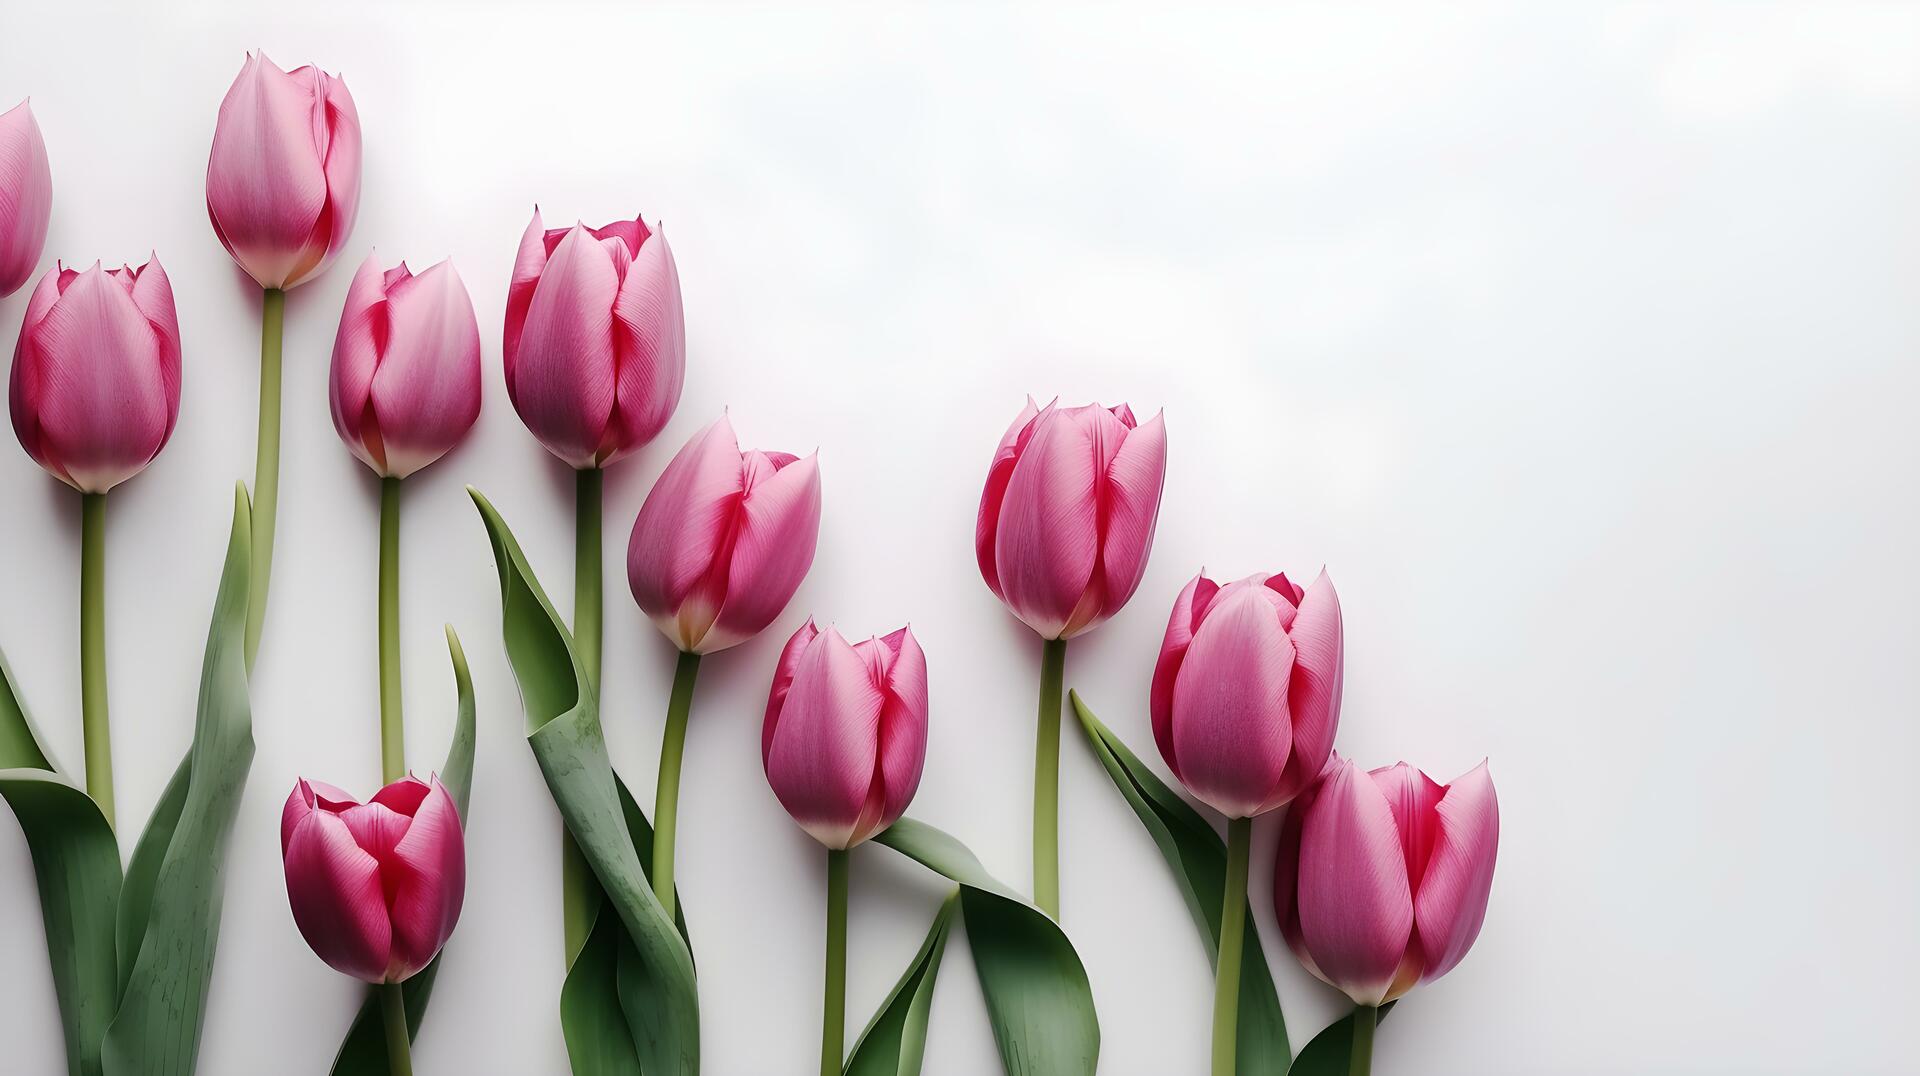 Na zdjęciu widać piękne, jasnoróżowe tulipany, które jako kwiaty cebulowe pojawiają się wiosną. Ich intensywny kolor i elegancki kształt sprawiają, że są bardzo popularne w ogrodach i parkach. Zdjęcie to może stanowić inspirację dla miłośników ogrodnictwa oraz osób, które chcą wprowadzić do swojego ogrodu romantyczne wiosenne kwitnienie